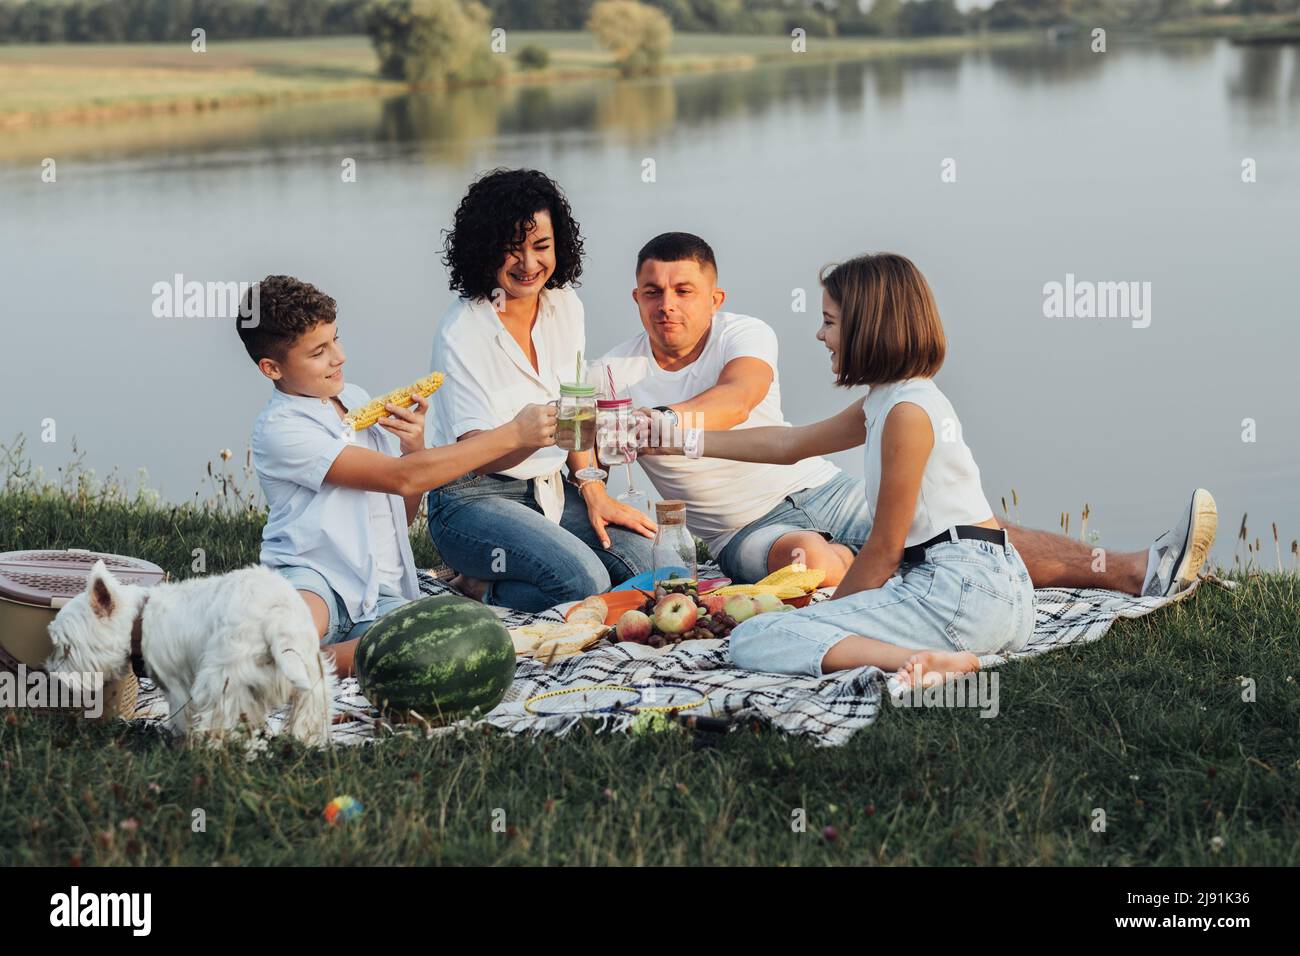 Glückliche vier Mitglieder Familie mit Hund beim Picknick bei Sonnenuntergang, fröhliche Mutter und Vater mit zwei Teenagern Kinder und Haustier genießen Wochenende im Freien Stockfoto